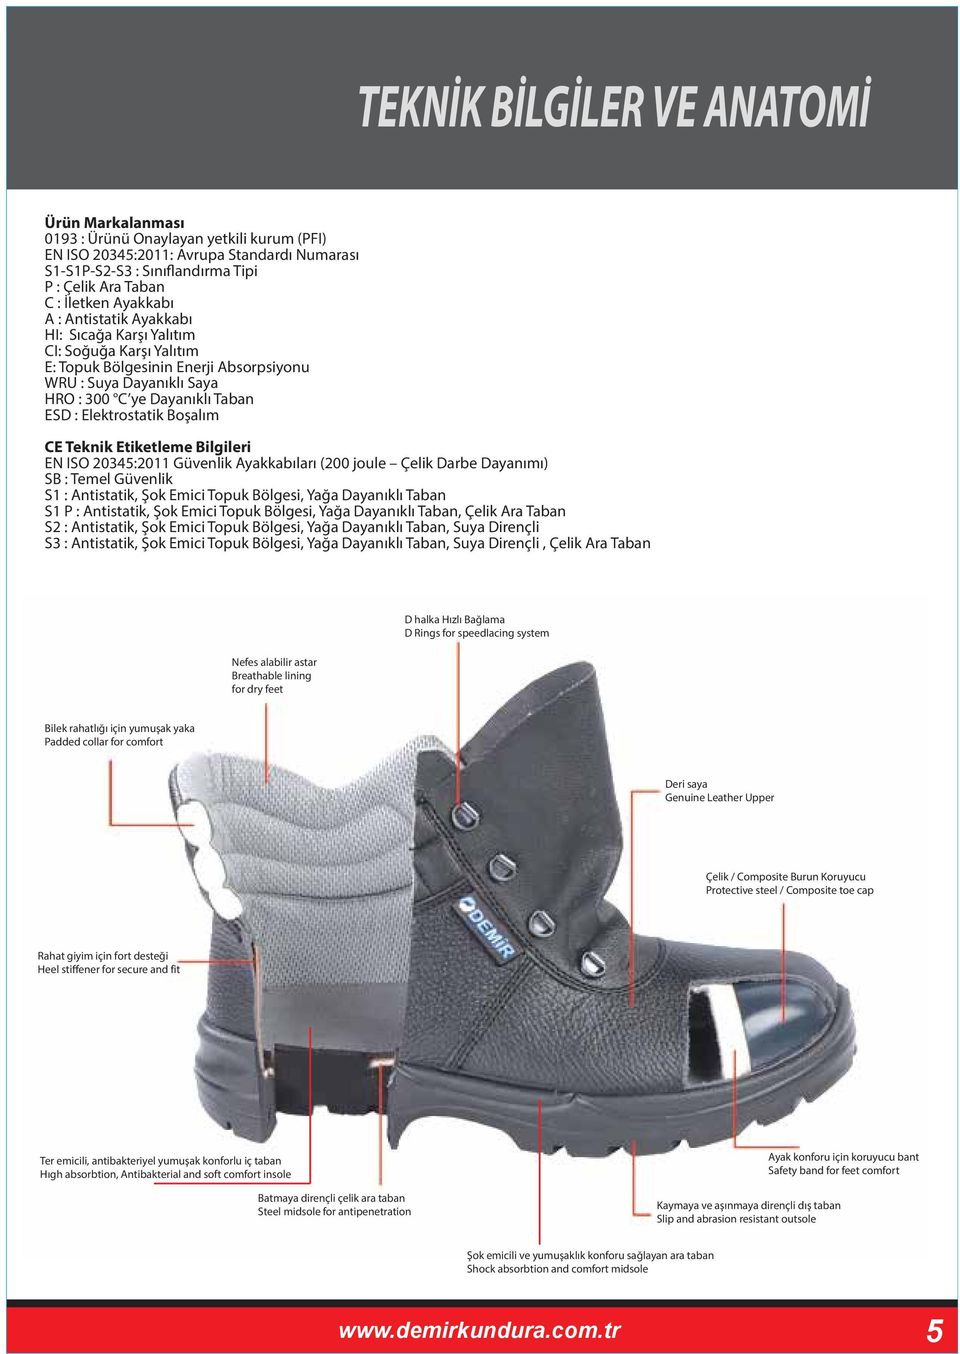 Boşalım CE Teknik Etiketleme Bilgileri EN ISO 20345:2011 Güvenlik Ayakkabıları (200 joule Çelik Darbe Dayanımı) SB : Temel Güvenlik S1 : Antistatik, Şok Emici Topuk Bölgesi, Yağa Dayanıklı Taban S1 P